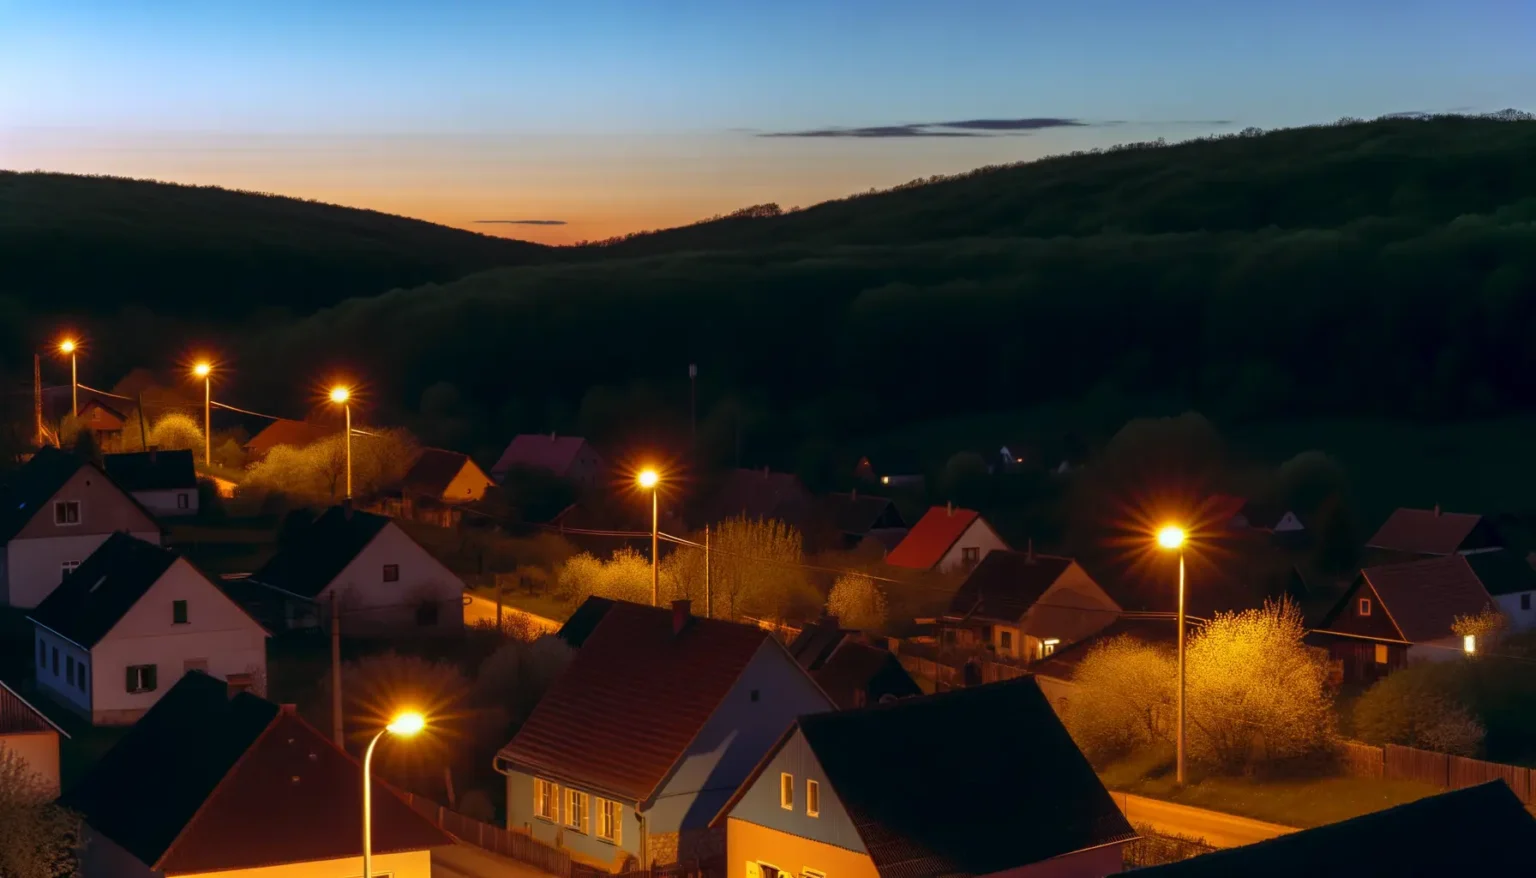 Eine idyllische Dorfansicht bei der Abenddämmerung mit beleuchteten Straßenlaternen, die ein warmes Licht auf die umliegenden Wohnhäuser werfen. Im Hintergrund erhebt sich ein bewaldeter Hügel vor einem pastellfarbenen Himmel, der von den letzten Strahlen des Sonnenuntergangs erleuchtet wird.